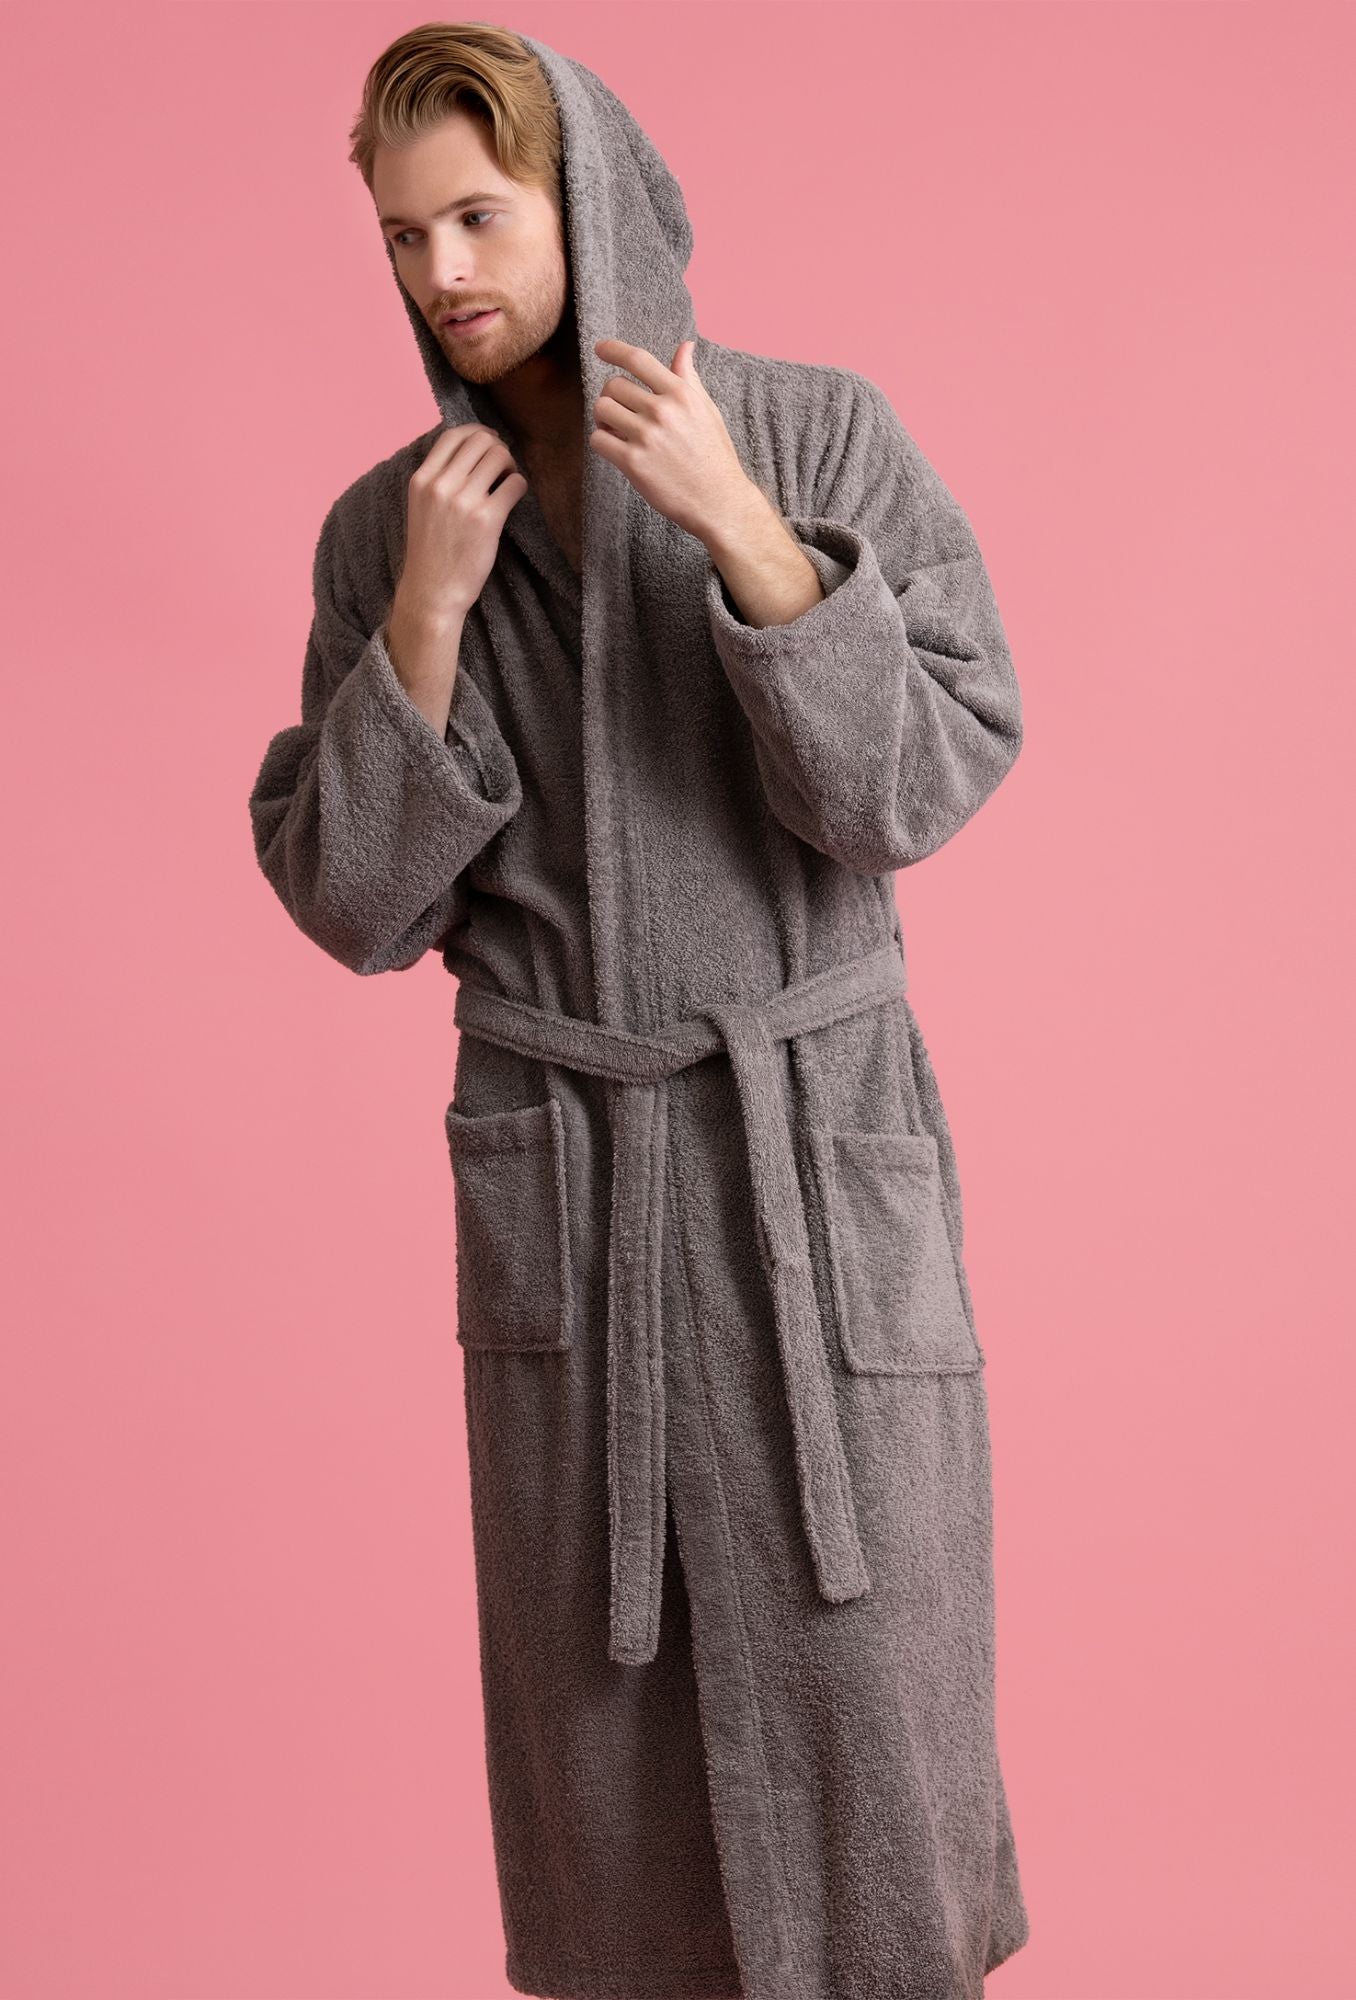 louis vuitton bathrobe mens